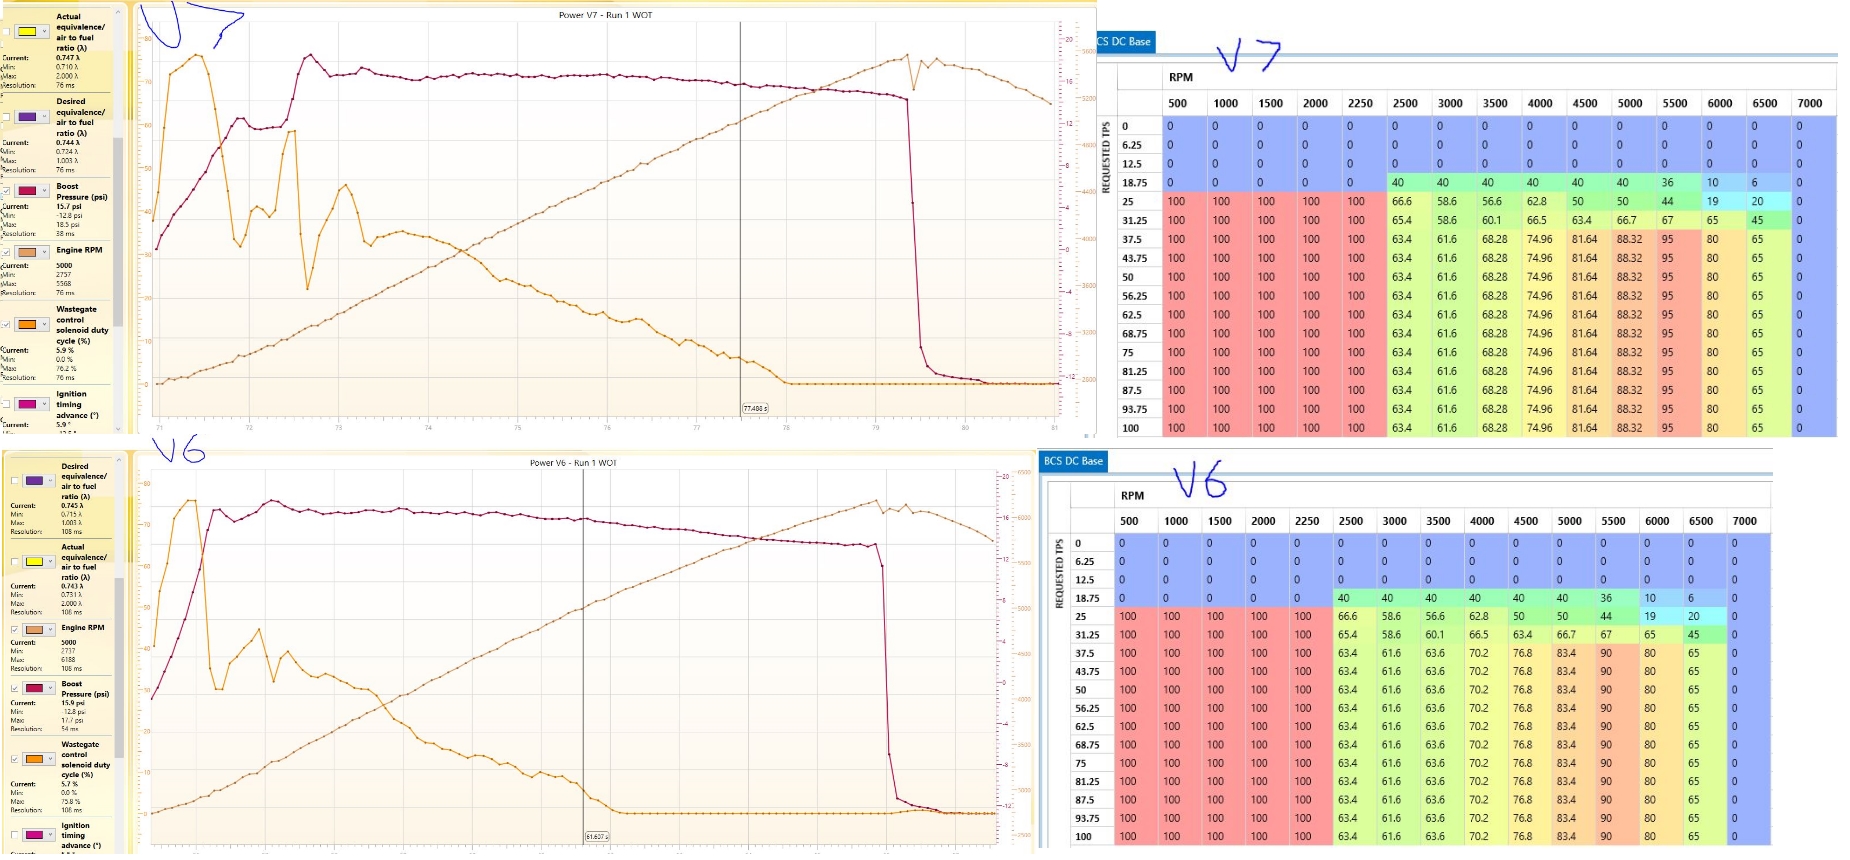 Screenshots of Main graphs/tables